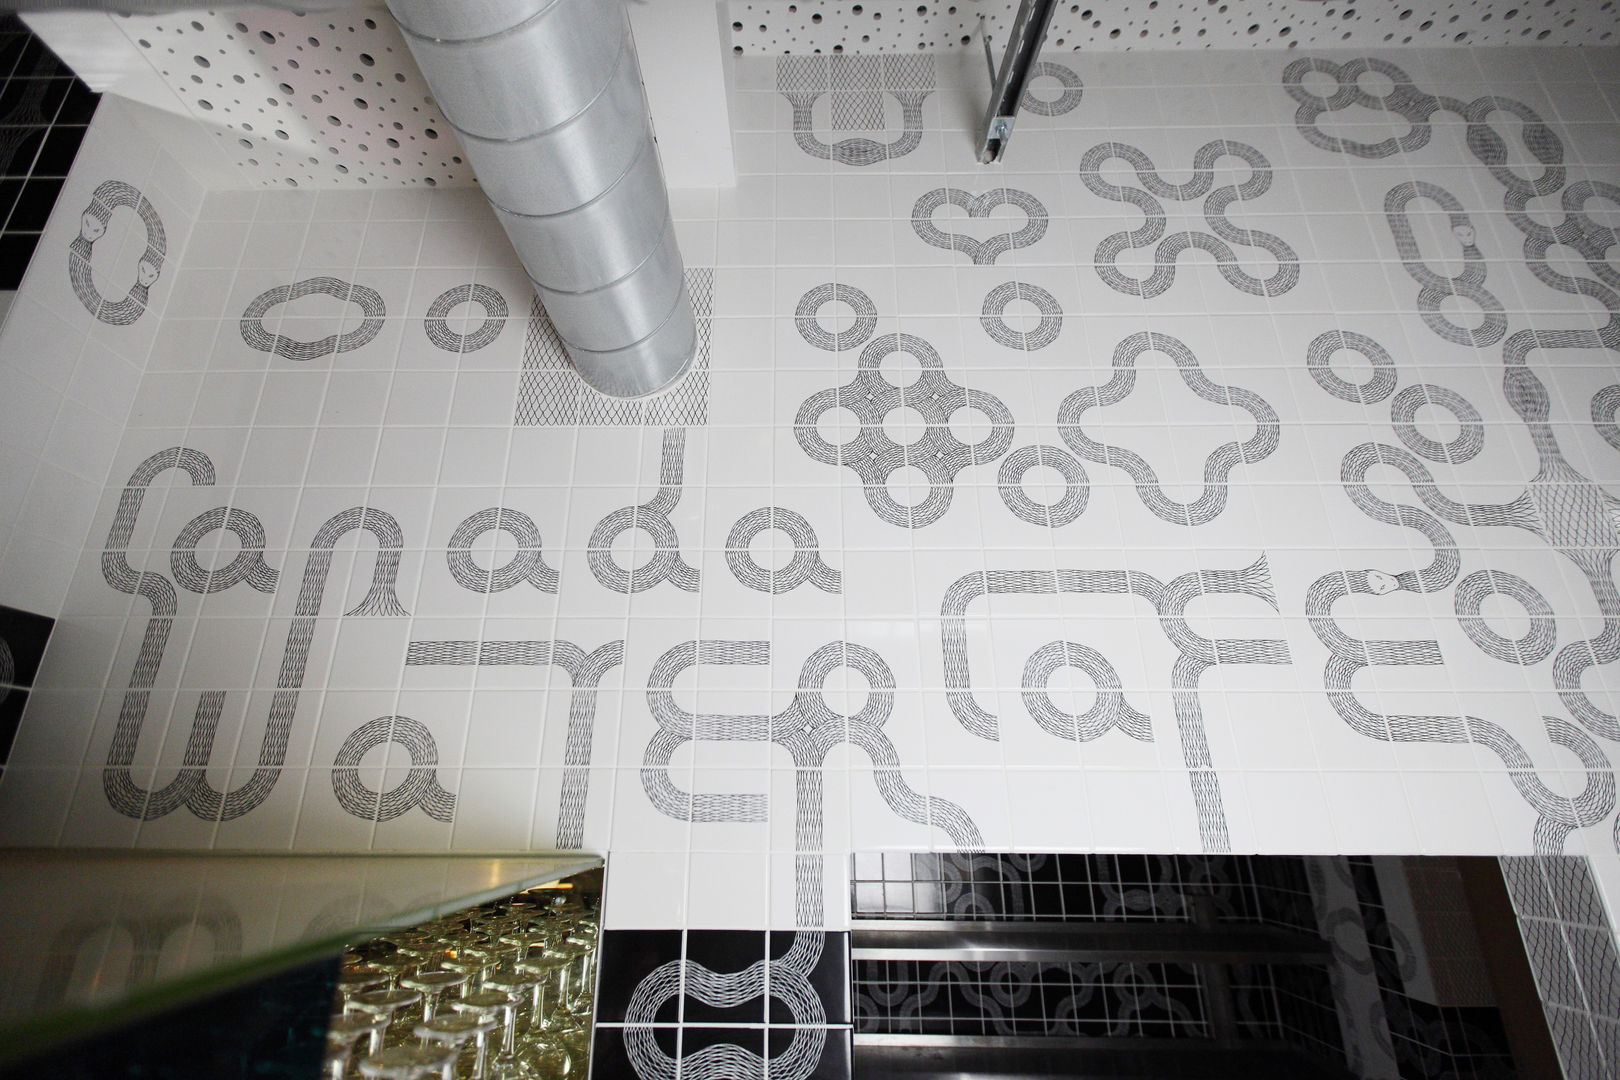 Ouroboros Tile installation at Canada Water Cafe, London Peter Ibruegger Studio مساحات تجارية مطاعم